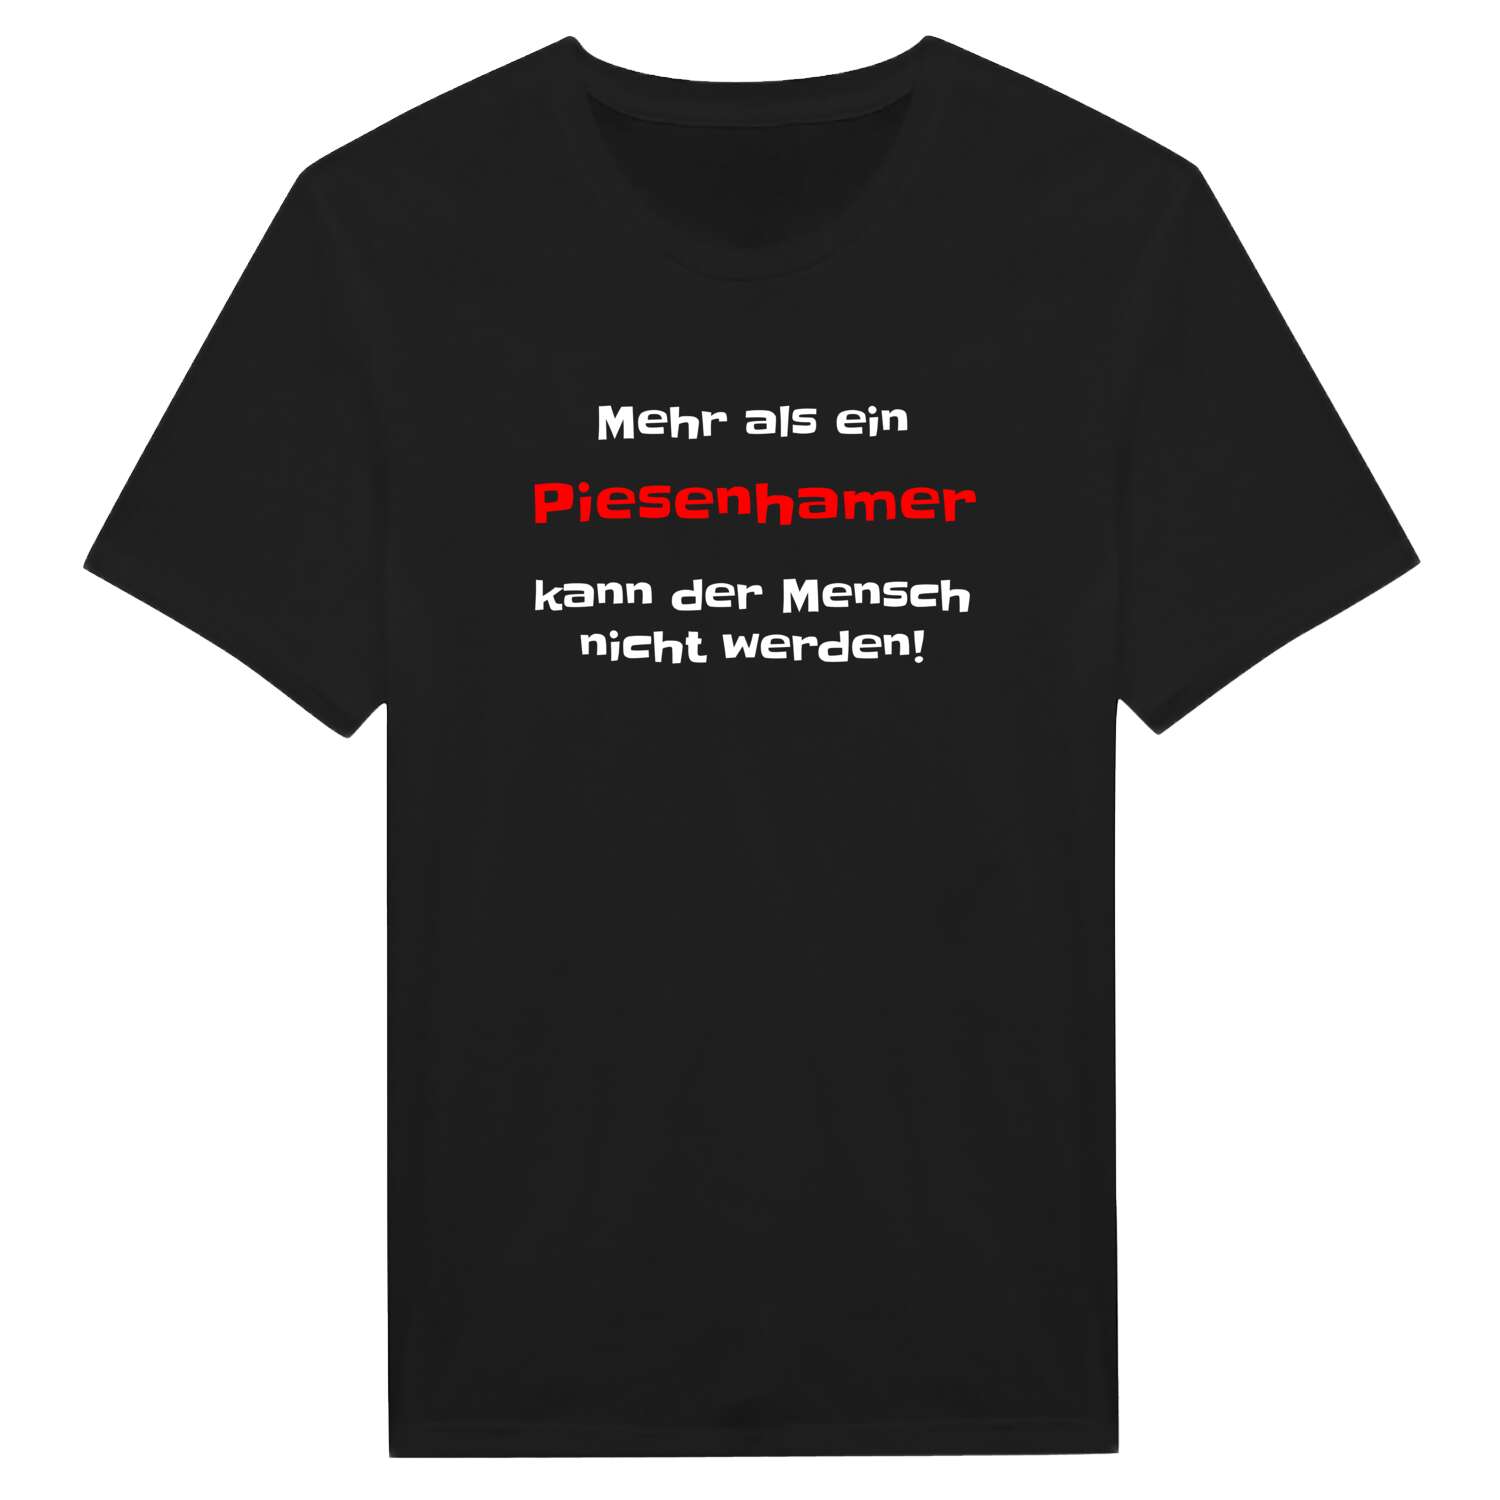 Piesenham T-Shirt »Mehr als ein«